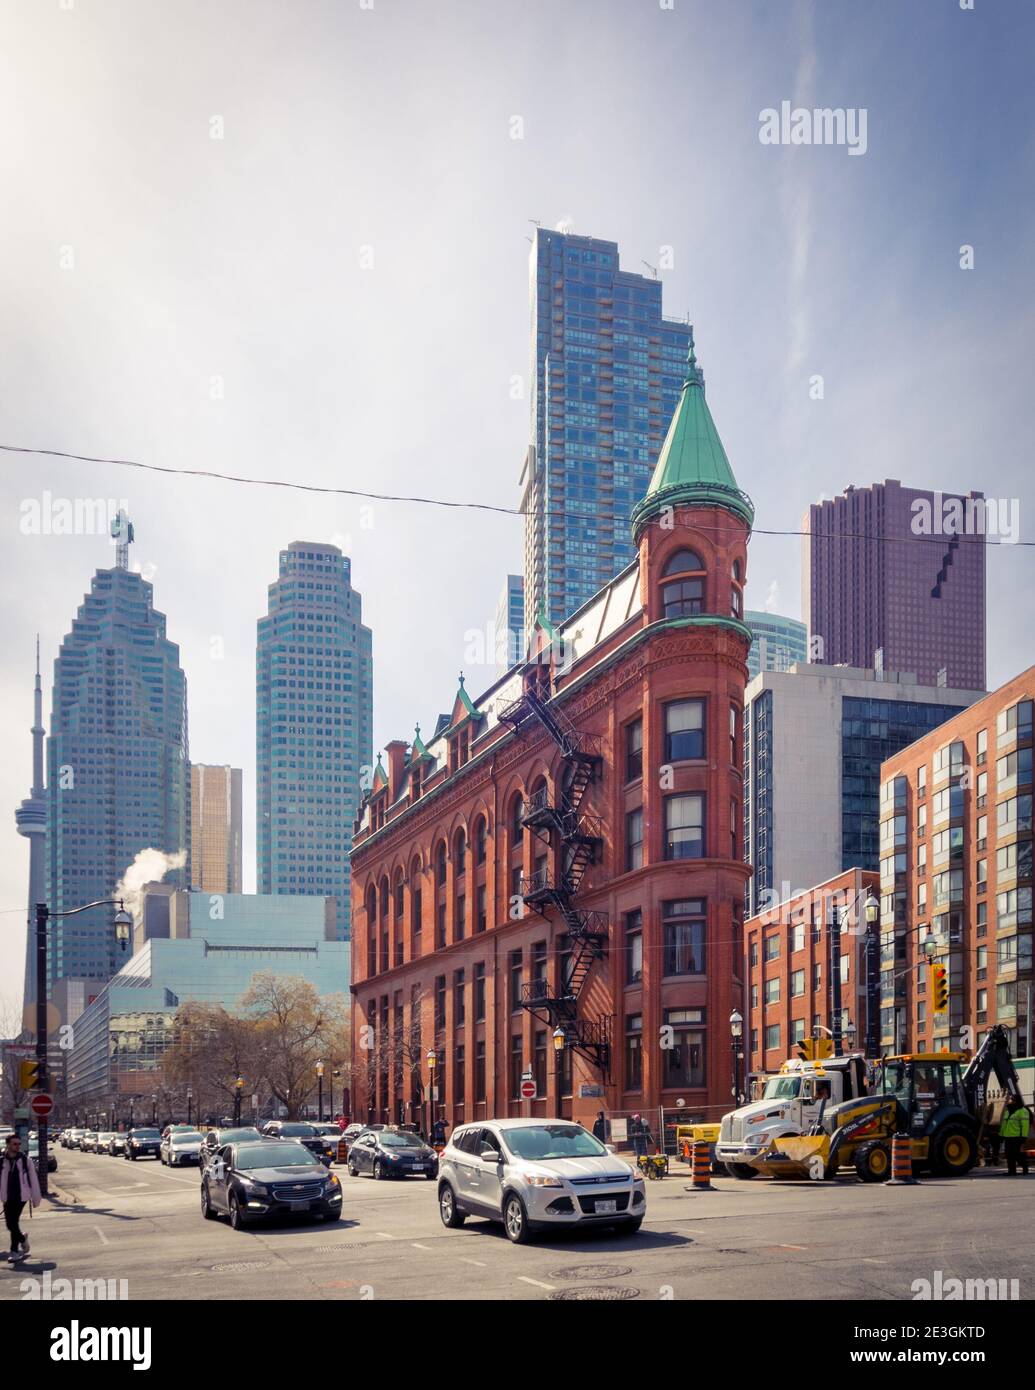 Una vista de la Gooderham Building (Edificio Flatiron) con el distrito financiero en el fondo. Toronto, Ontario, Canadá. Foto de stock